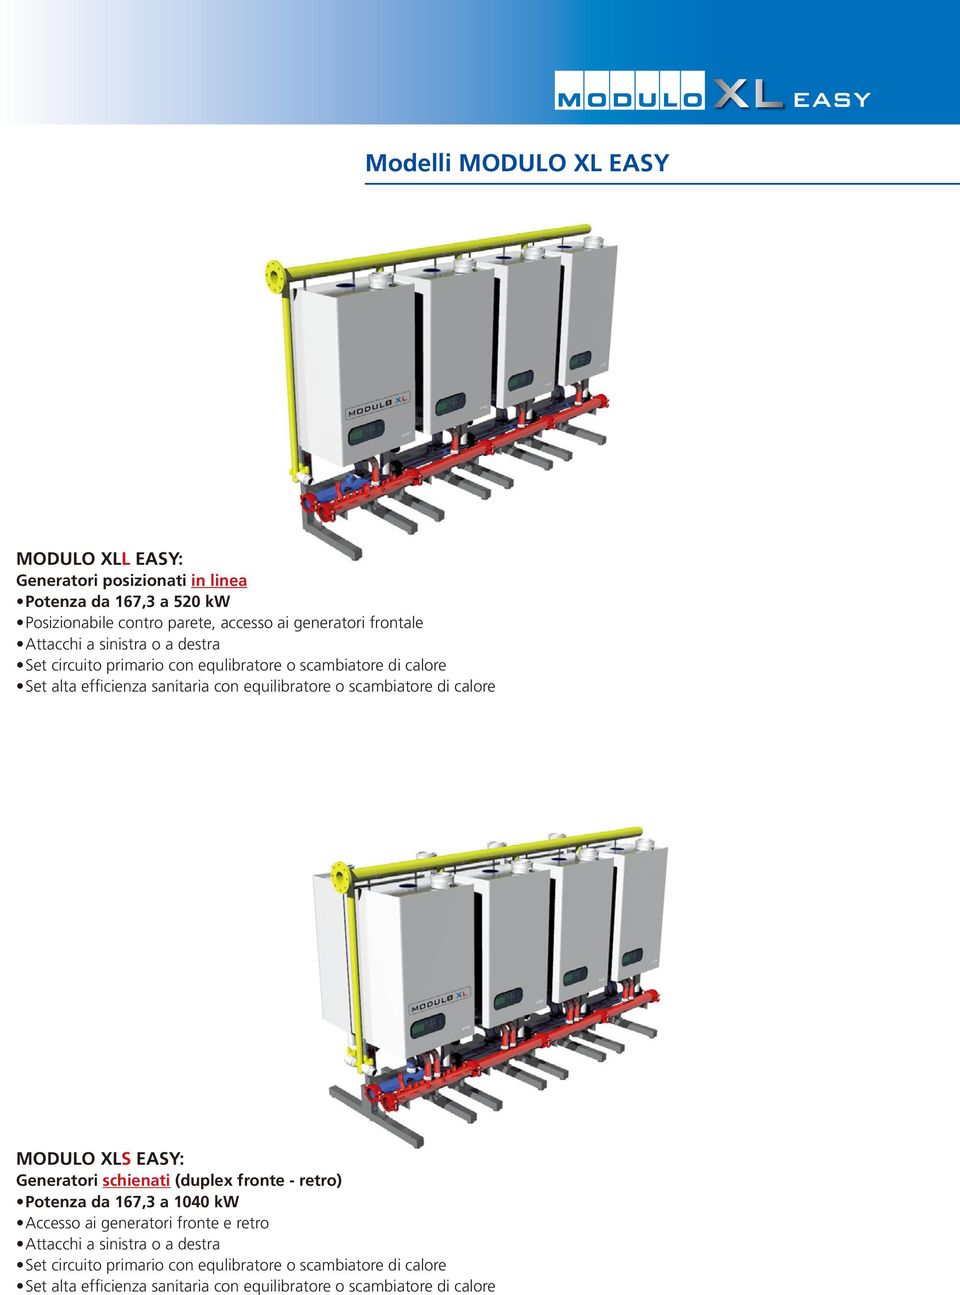 scambiatore di calore MODULO XLS EASY: Generatori schienati (duplex fronte - retro) Potenza da 167,3 a 1040 kw Accesso ai generatori fronte e retro